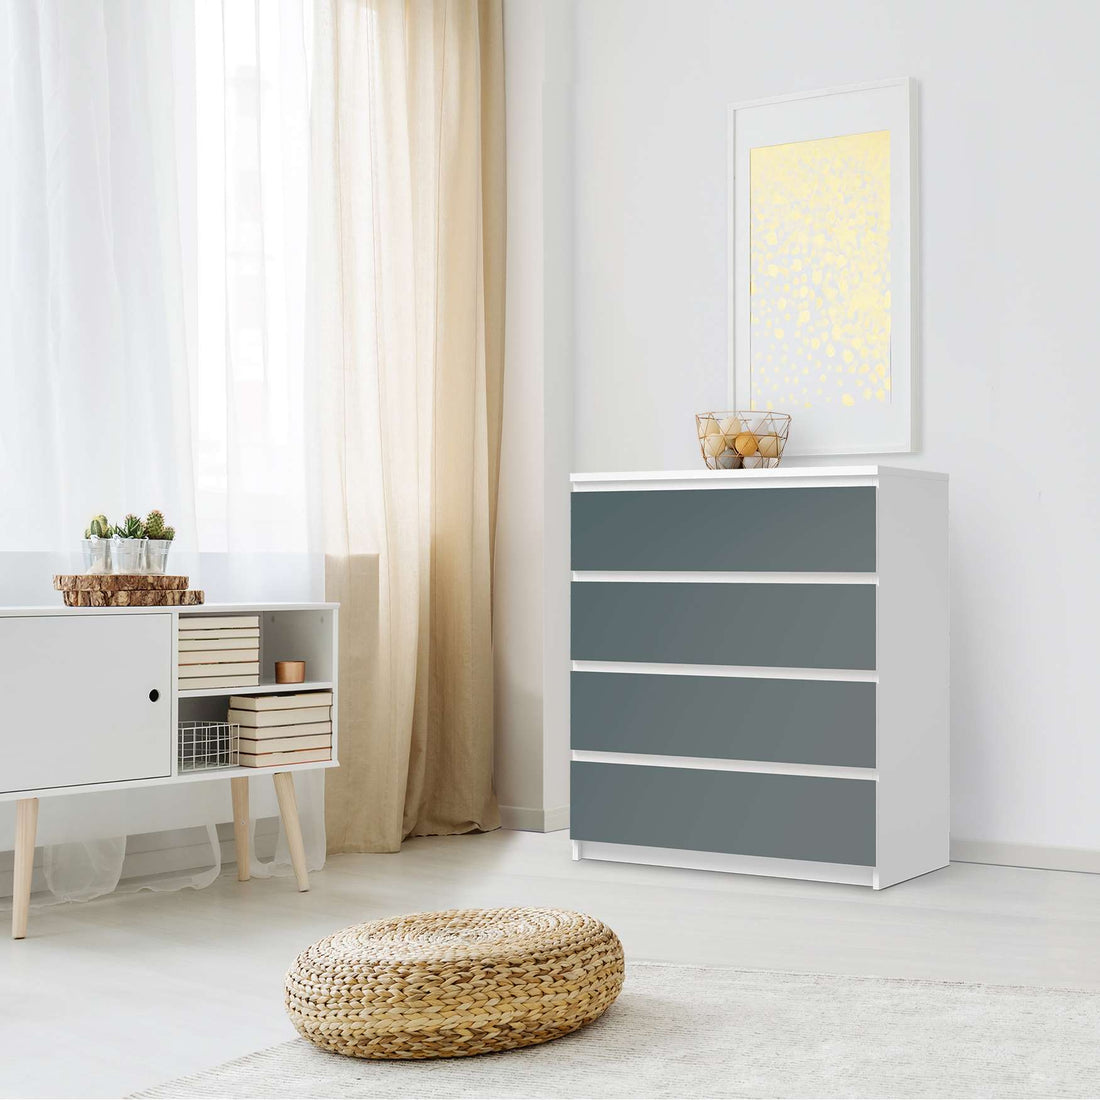 Folie für Möbel Blaugrau Light - IKEA Malm Kommode 4 Schubladen - Schlafzimmer